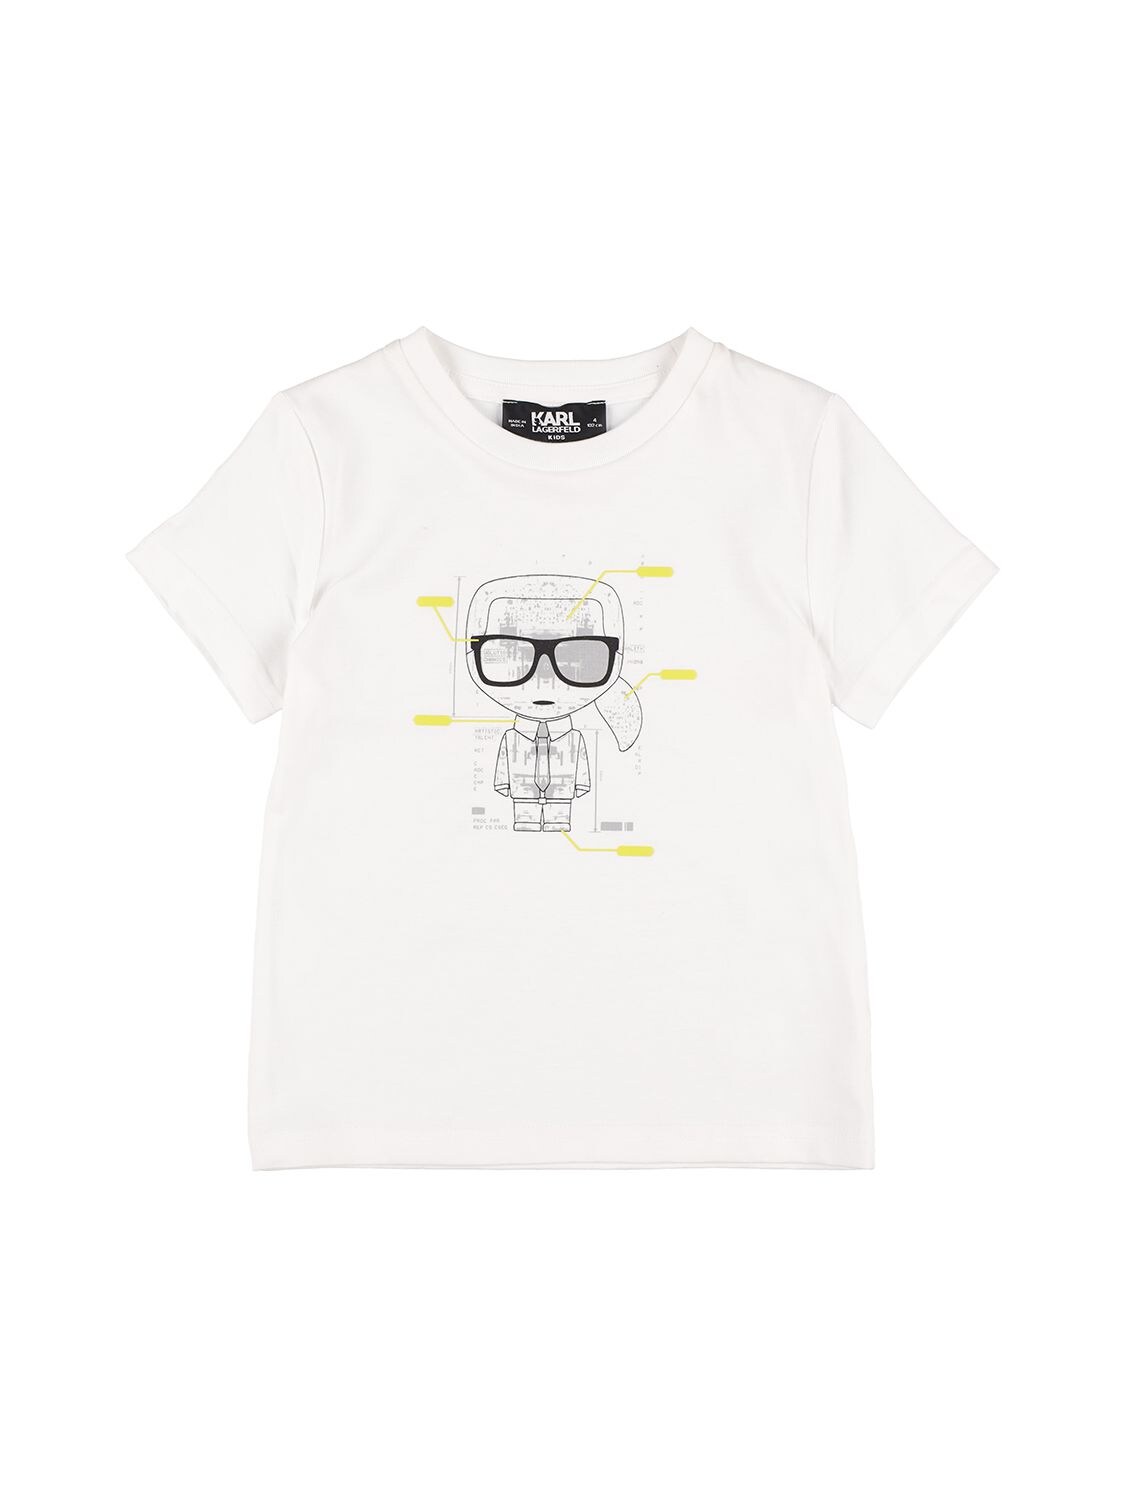 Karl Print Organic Cotton T-shirt